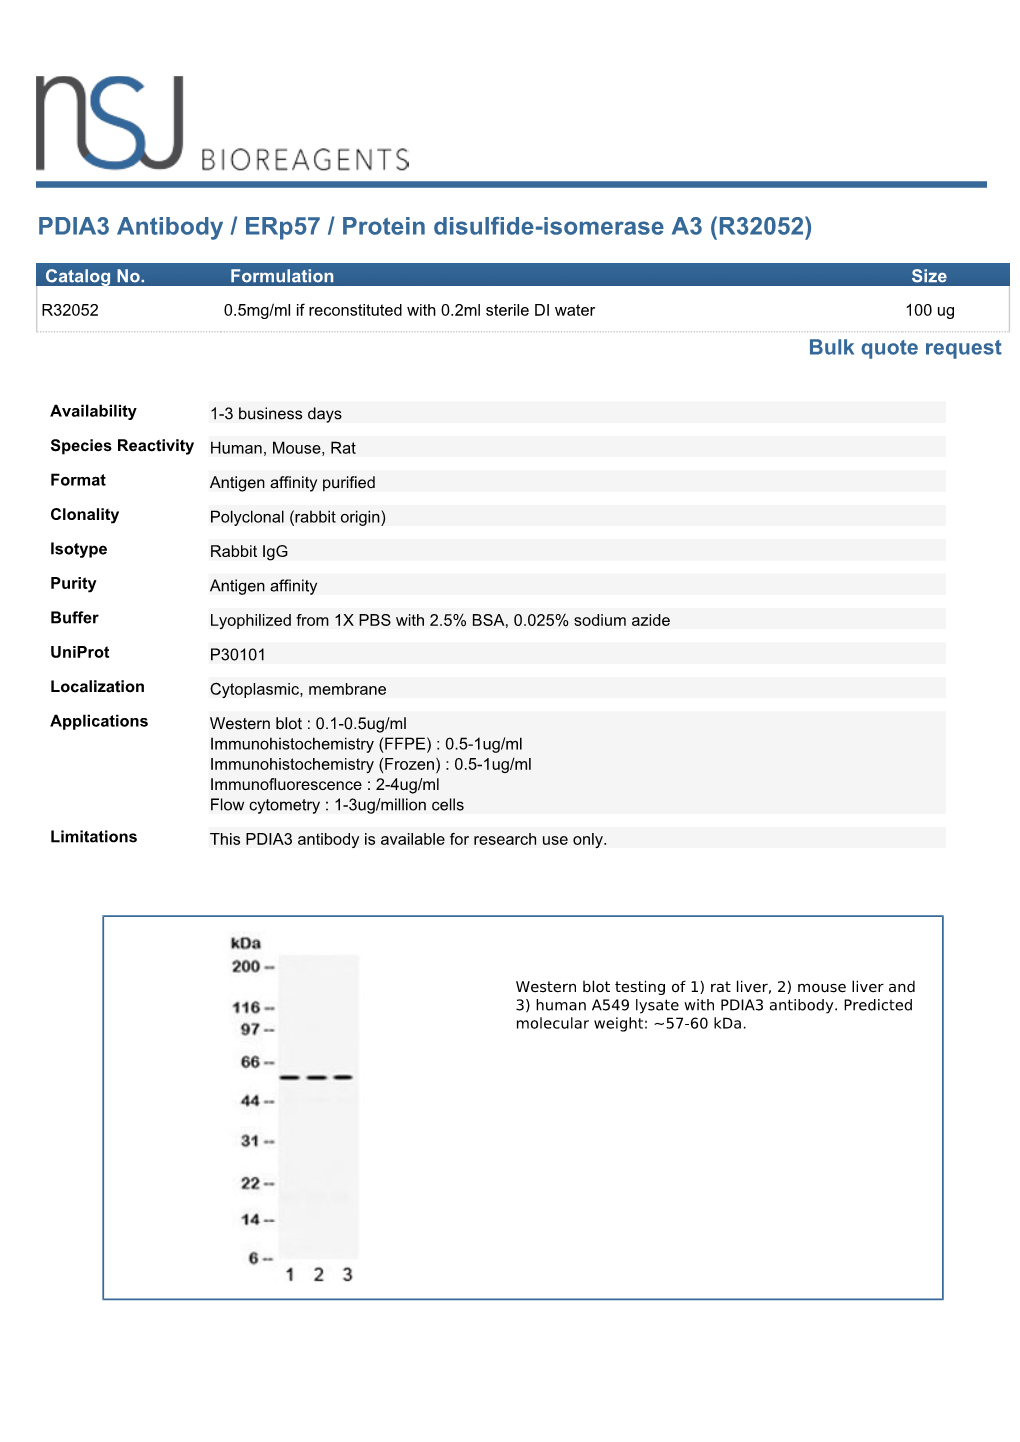 PDIA3 Antibody / Erp57 (R32052)